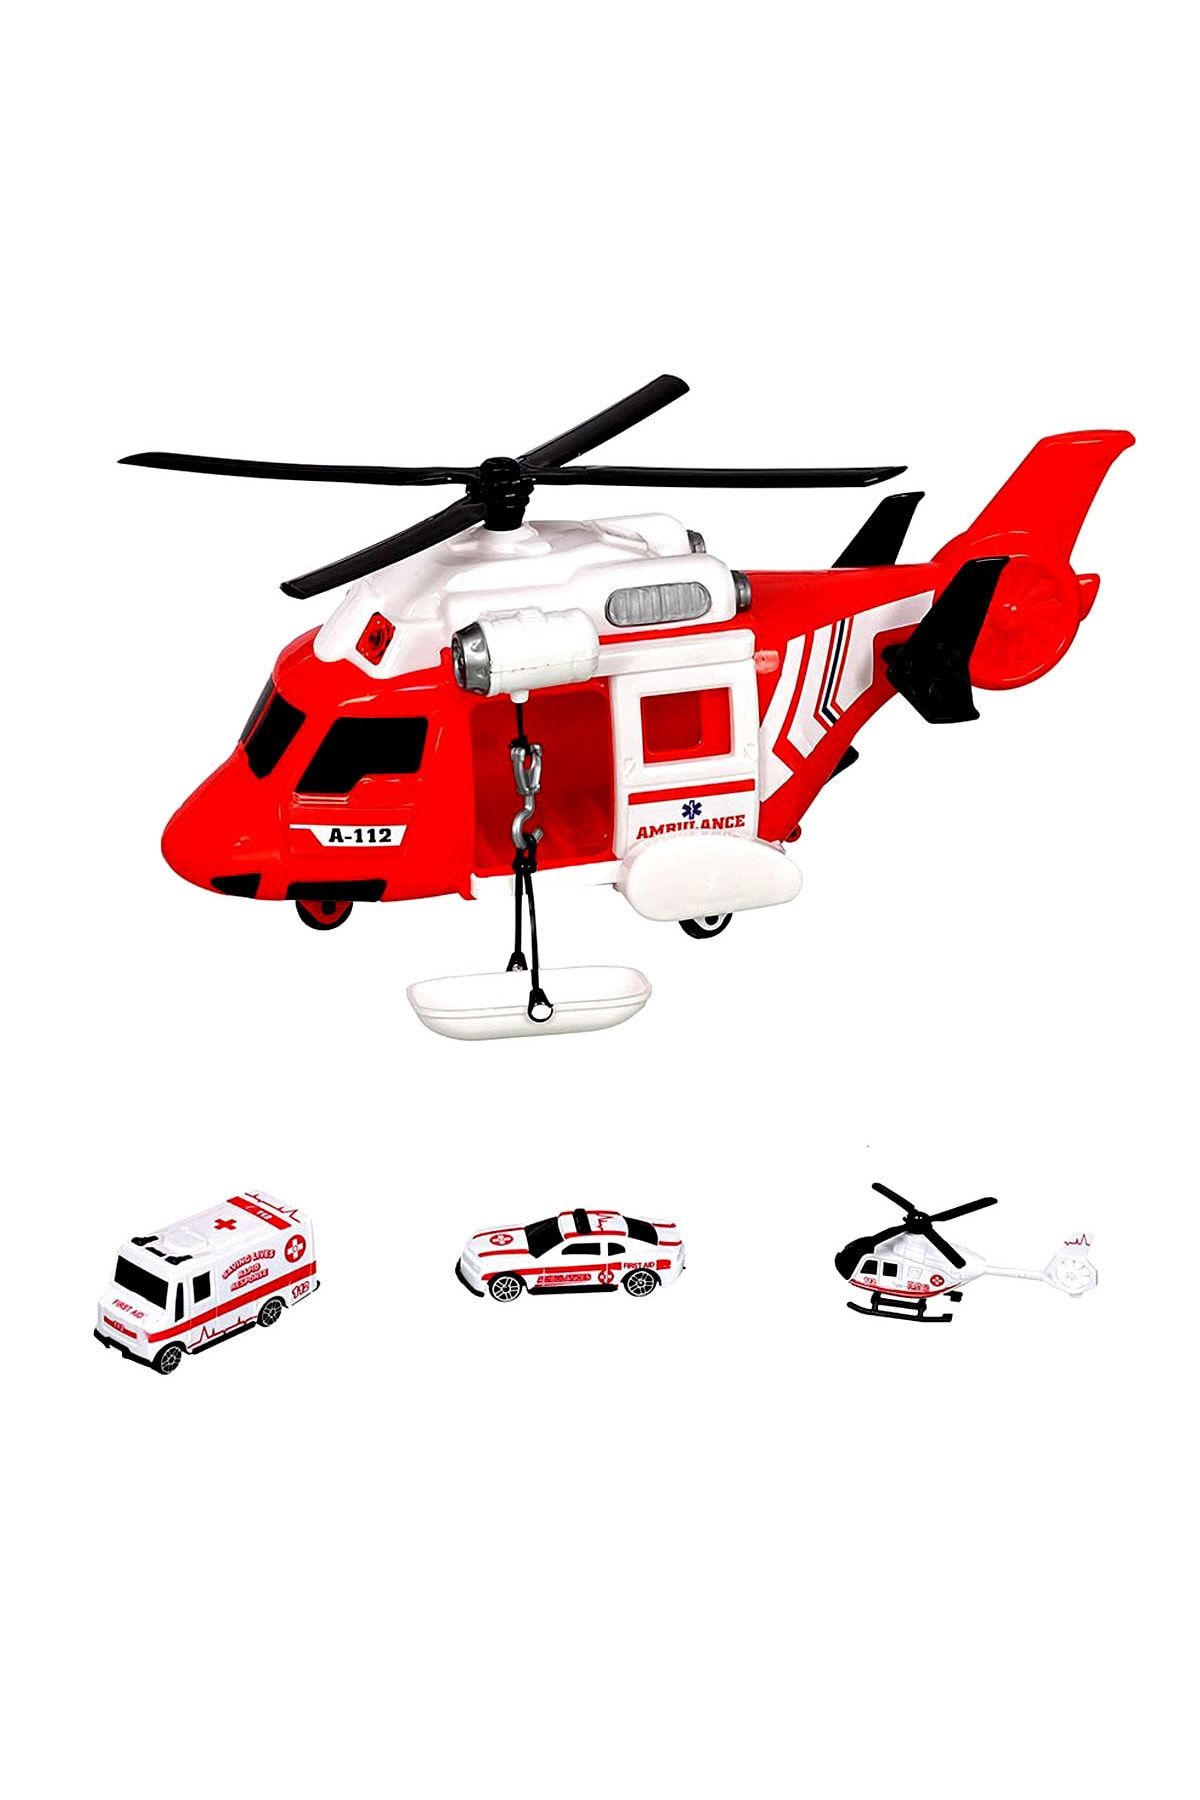 SAZE ERN-2004 Helikopter Ambulans Seti Arabalı Helikopterin kanatlarının hareketli olması oyunu daha